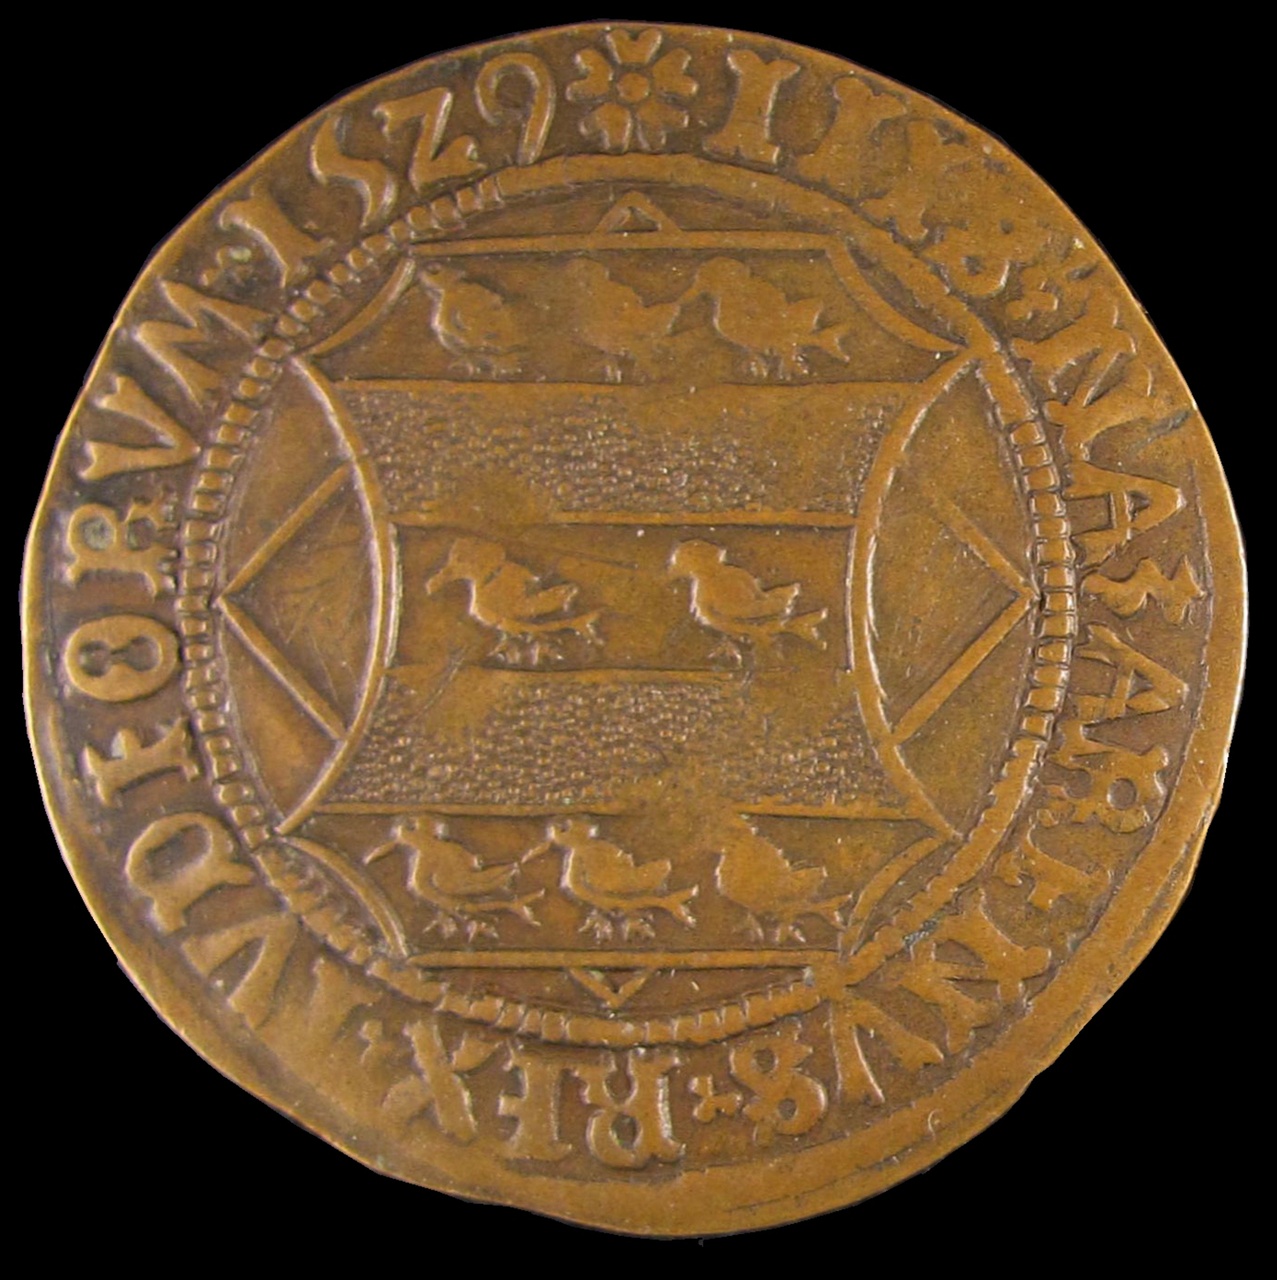 Legpenning met wapen van de familie van Mierop, 1529